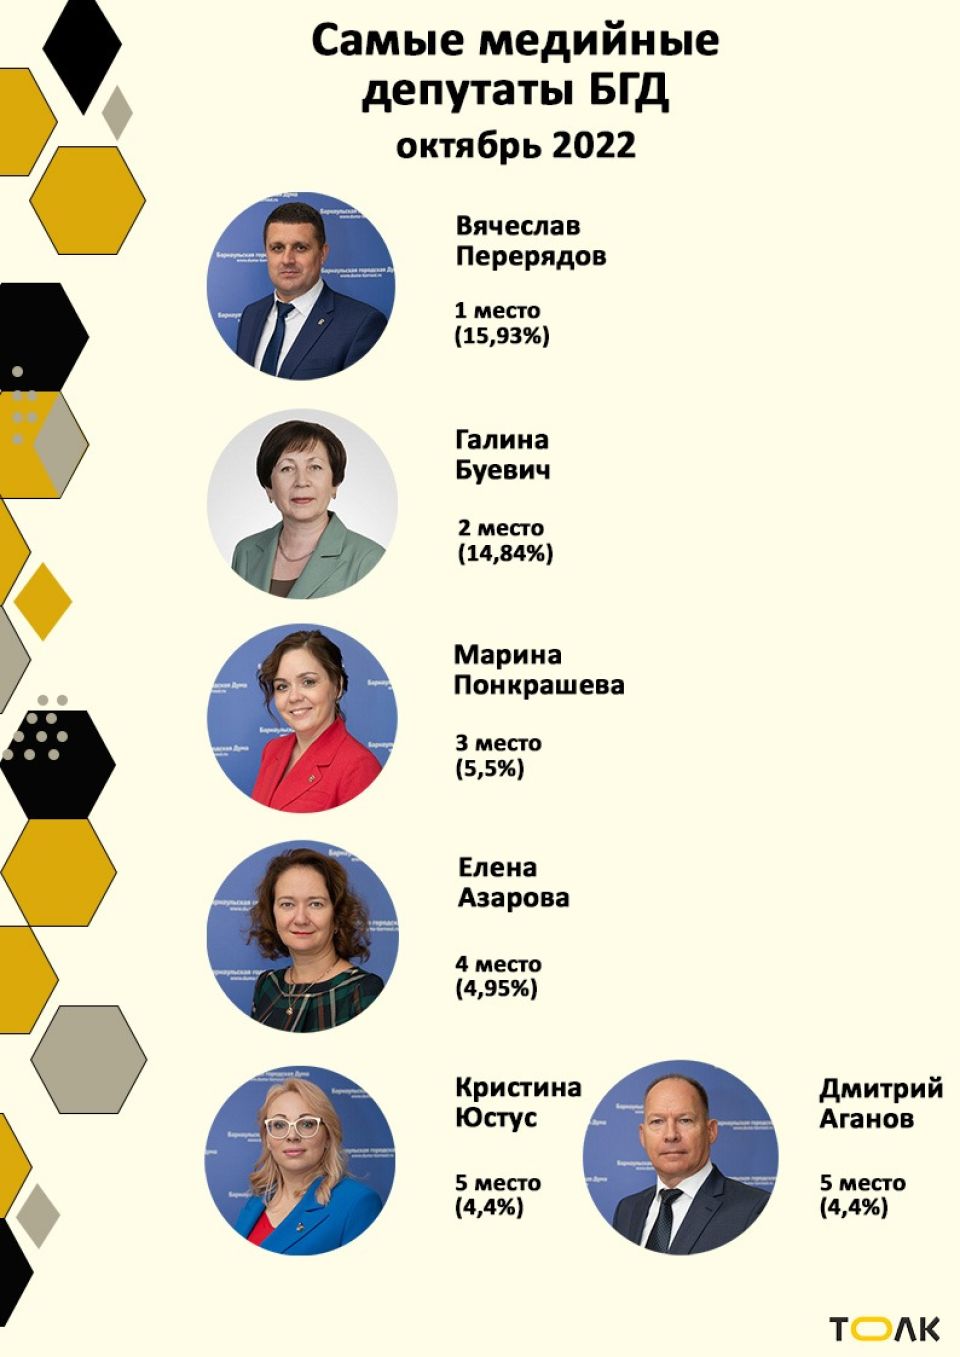 Рейтинг медийности депутатов БГД, октябрь 2022 года